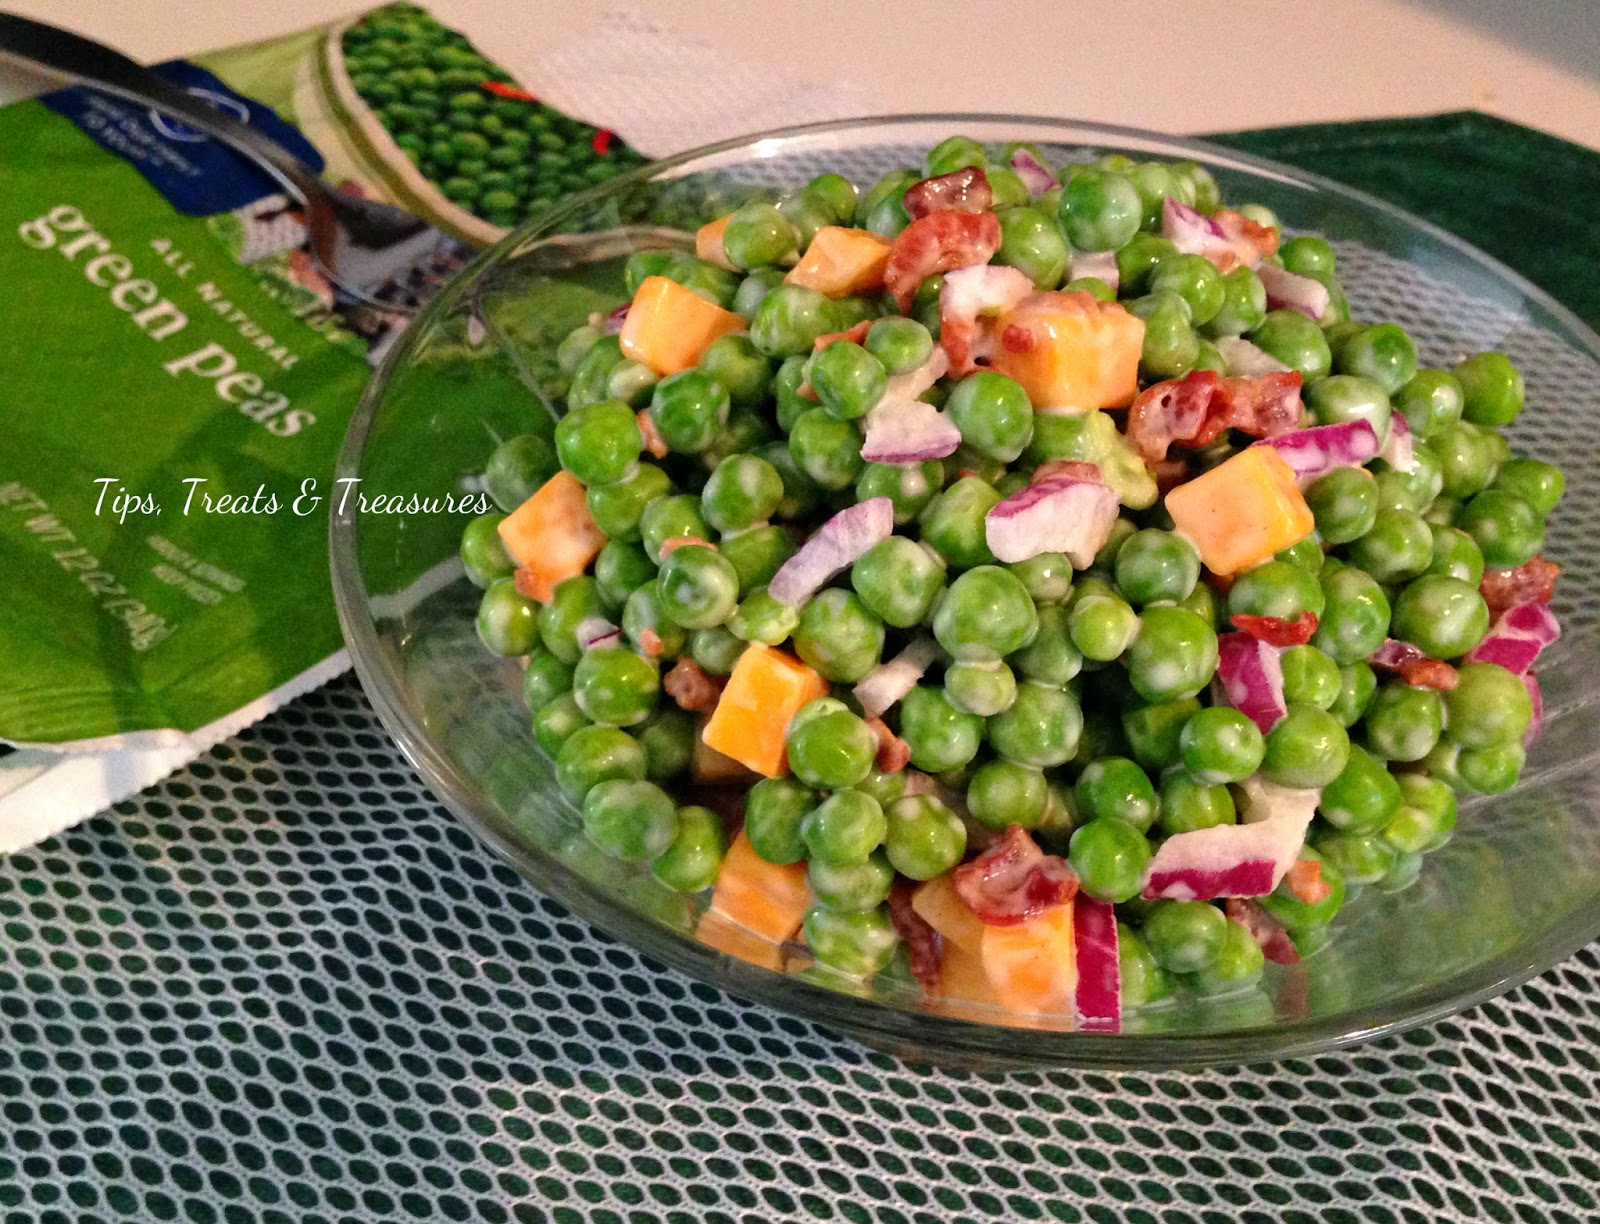 Tips, Treats & Treasures: Pea Salad - cool, creamy, and delicious